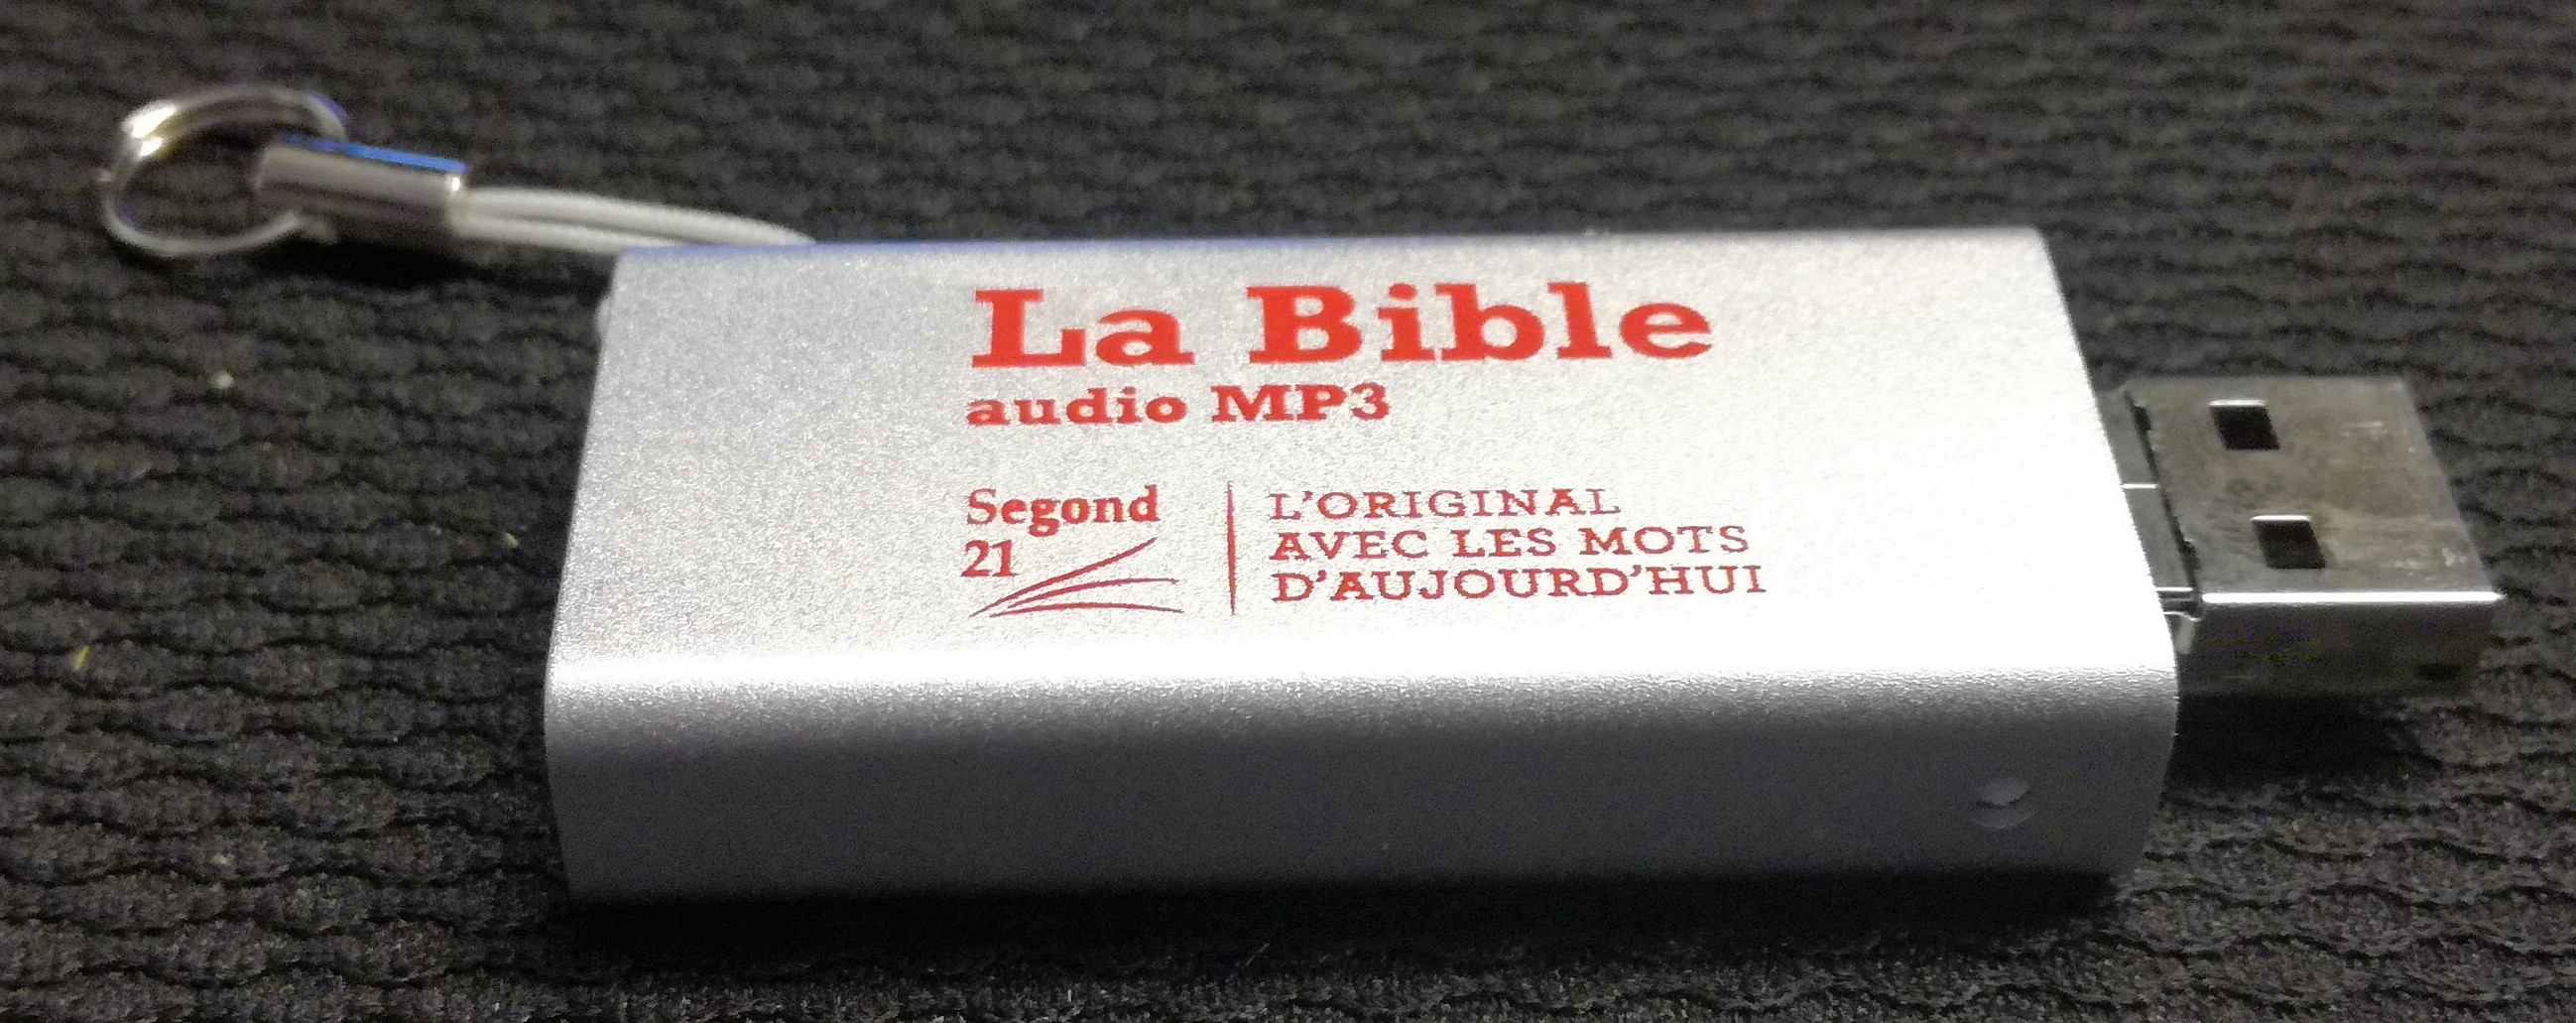 BIBLE SEGOND 21 AUDIO - CLE USB - NOUVEAU MODELE